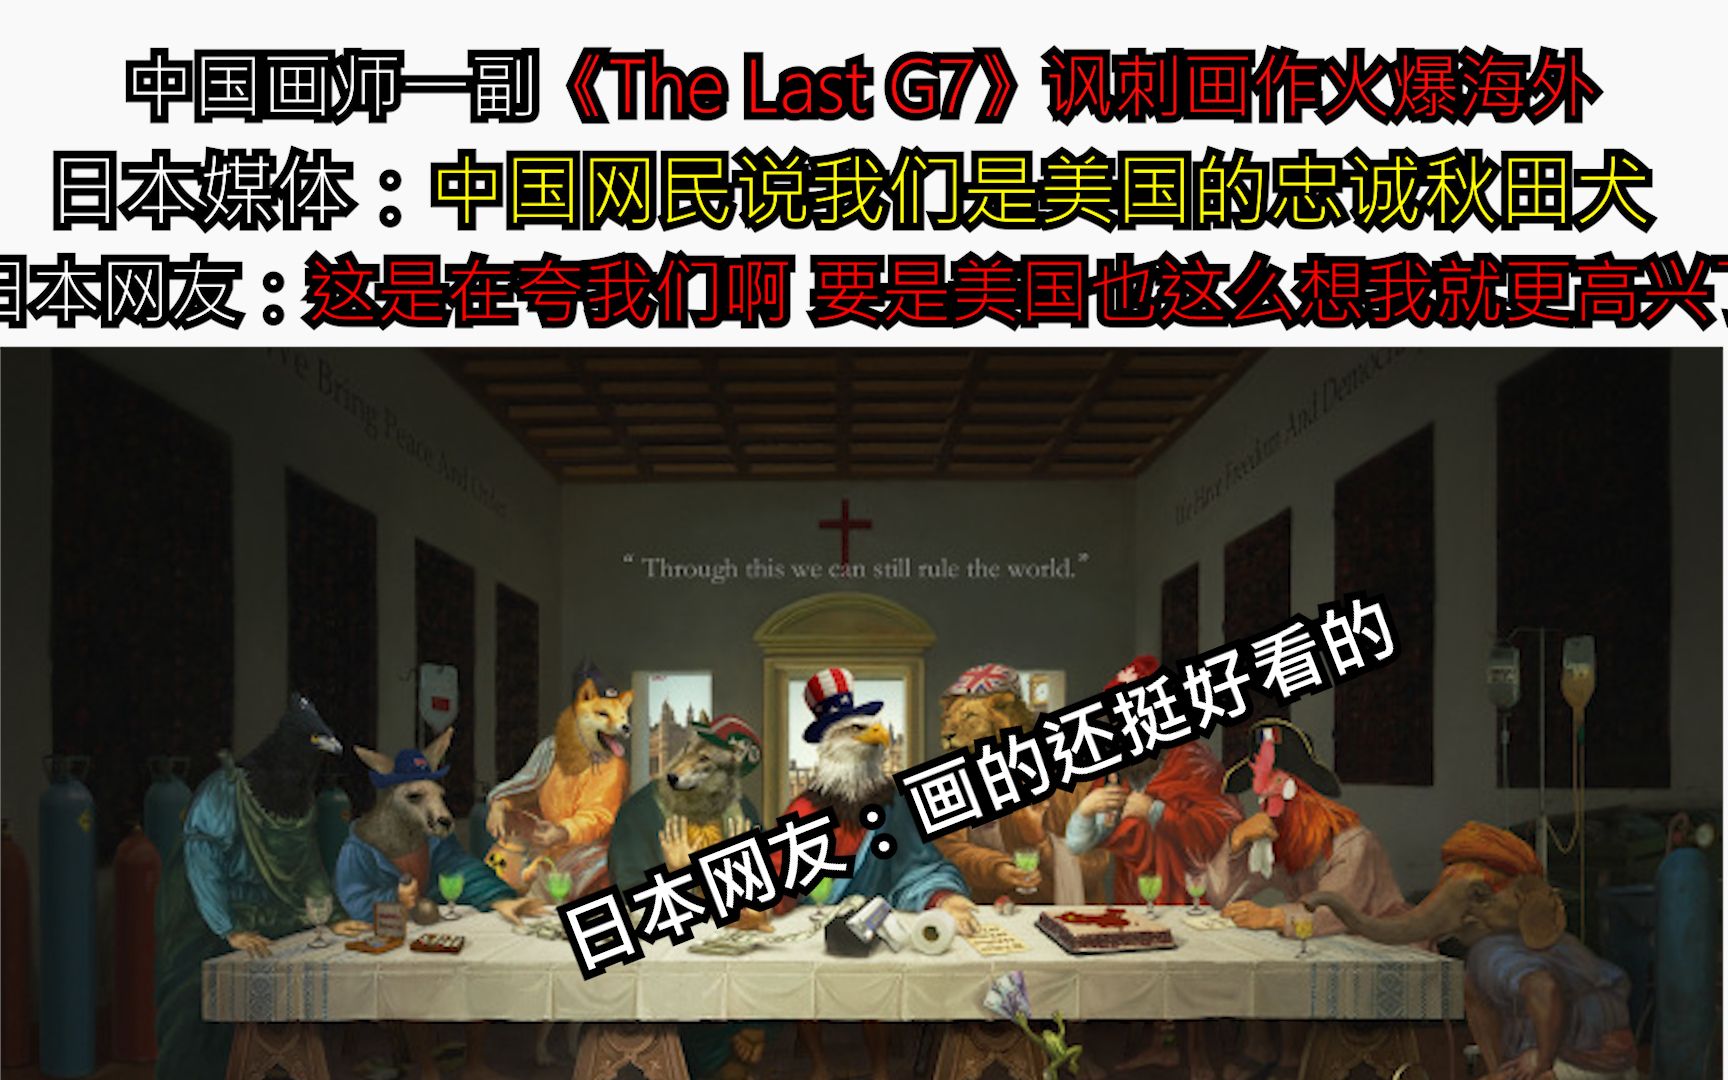 中国画师一副《The Last G7》讽刺画作火爆海外  日本媒体：中国网民说我们是美国的忠诚秋田犬   日本网友：这是在夸我们啊 要是美国也这么想我就更高兴了